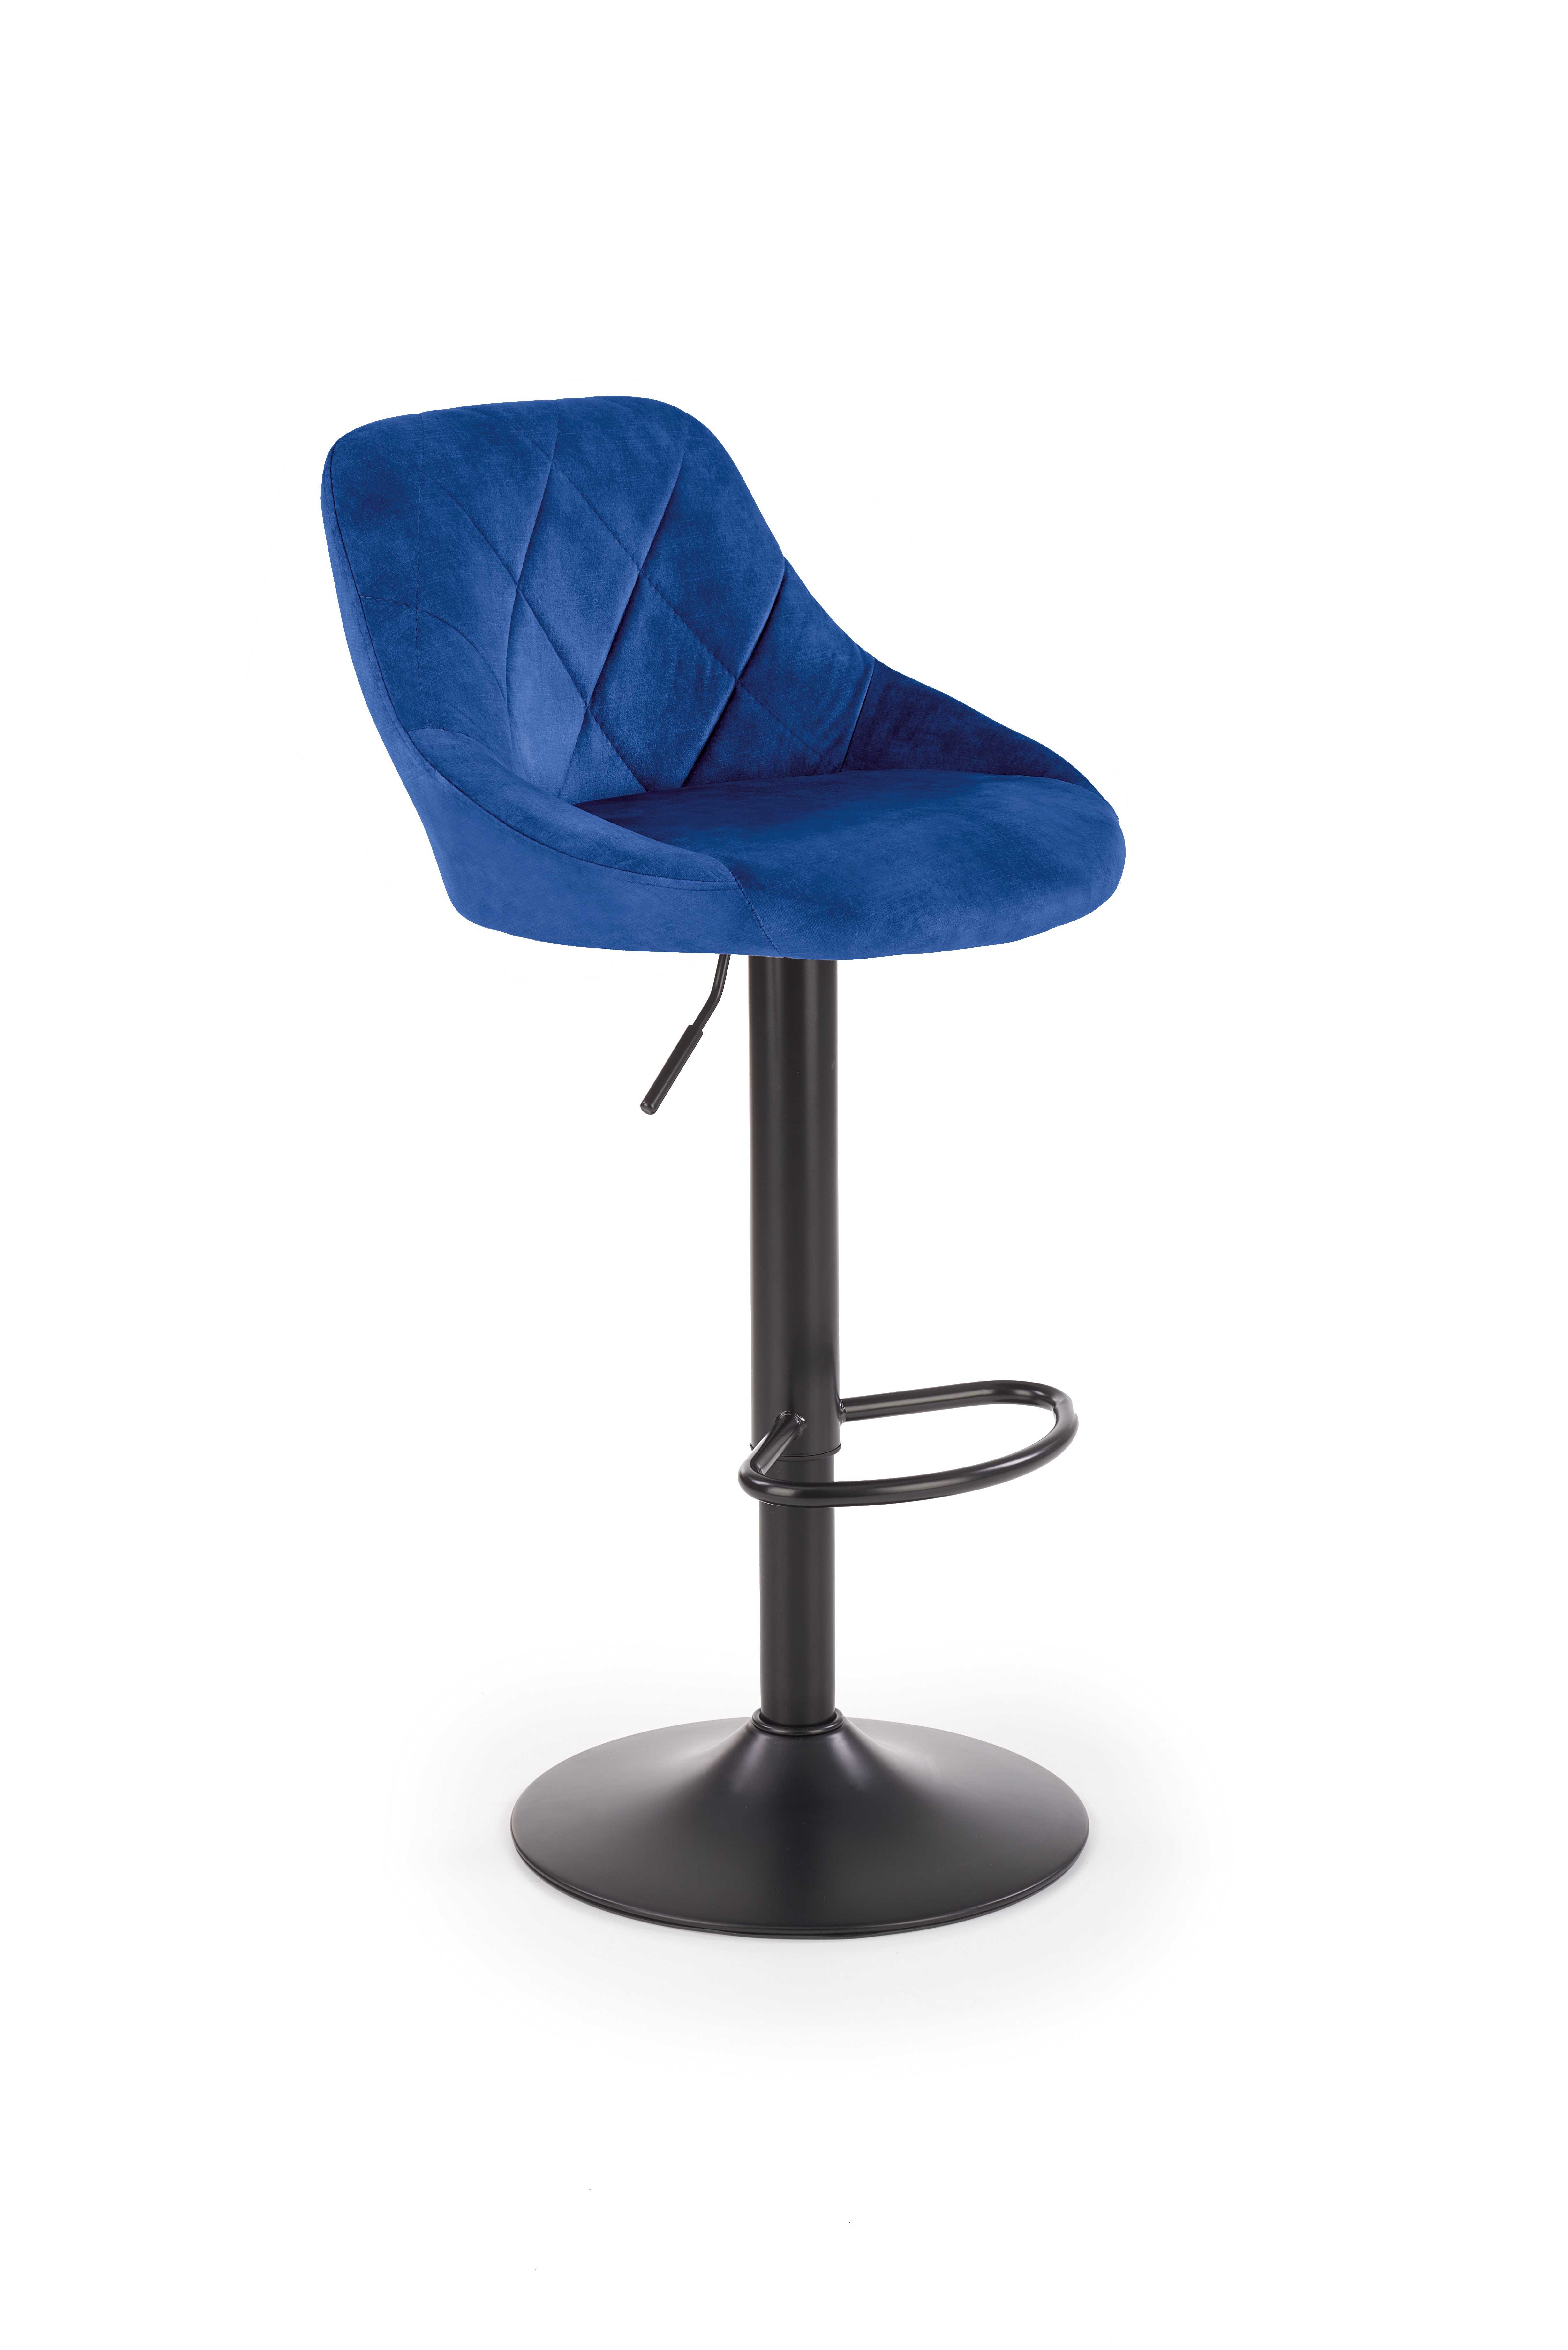 H101 barová židle tmavě modrá | Nábytek a dekorace > Jídelna > Barové židle a stoličky > Barové židle